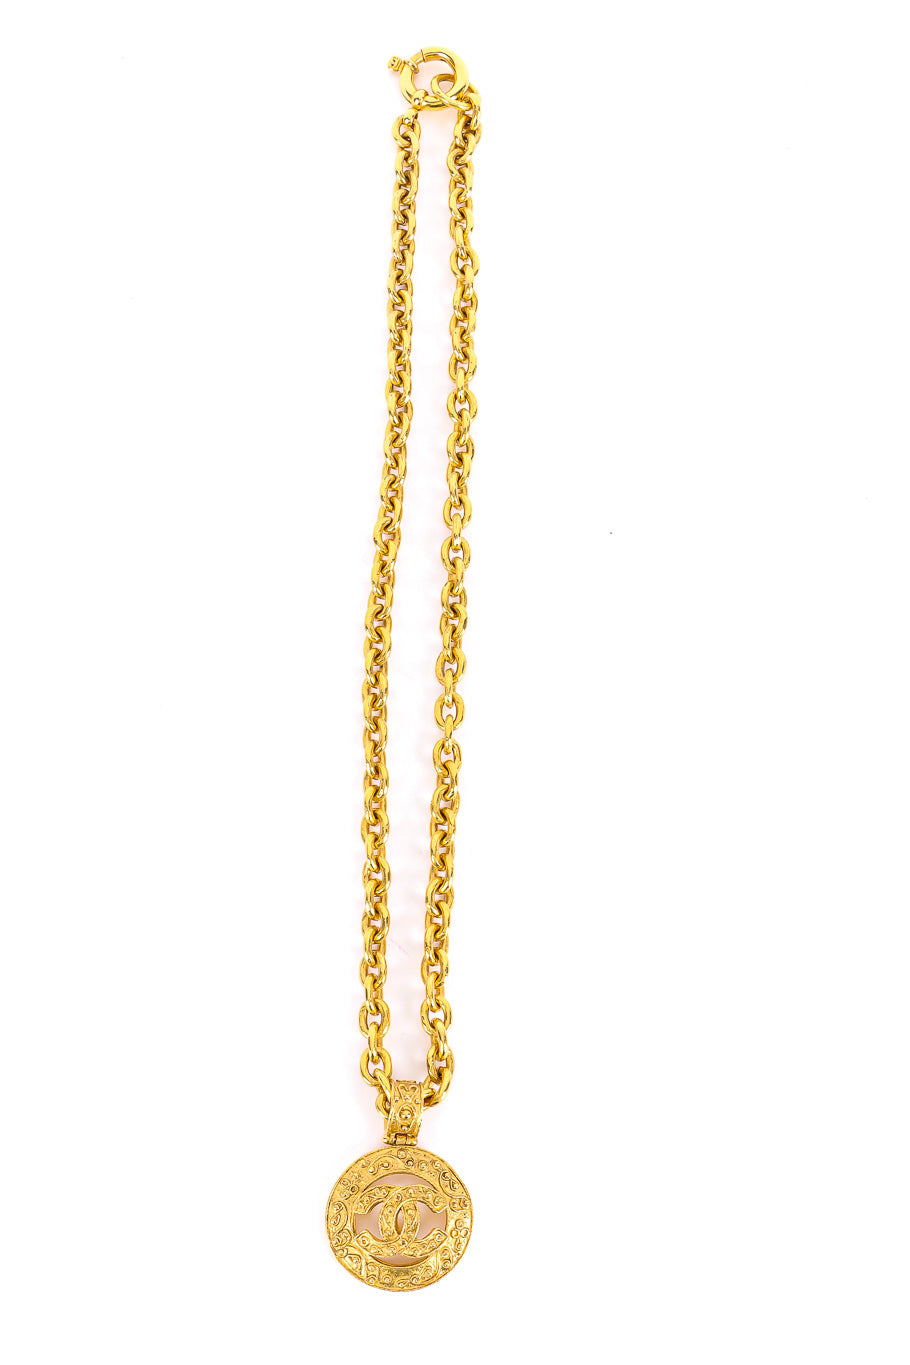 Vintage Chanel Brocade CC Pendant Necklace flat lay @recessla